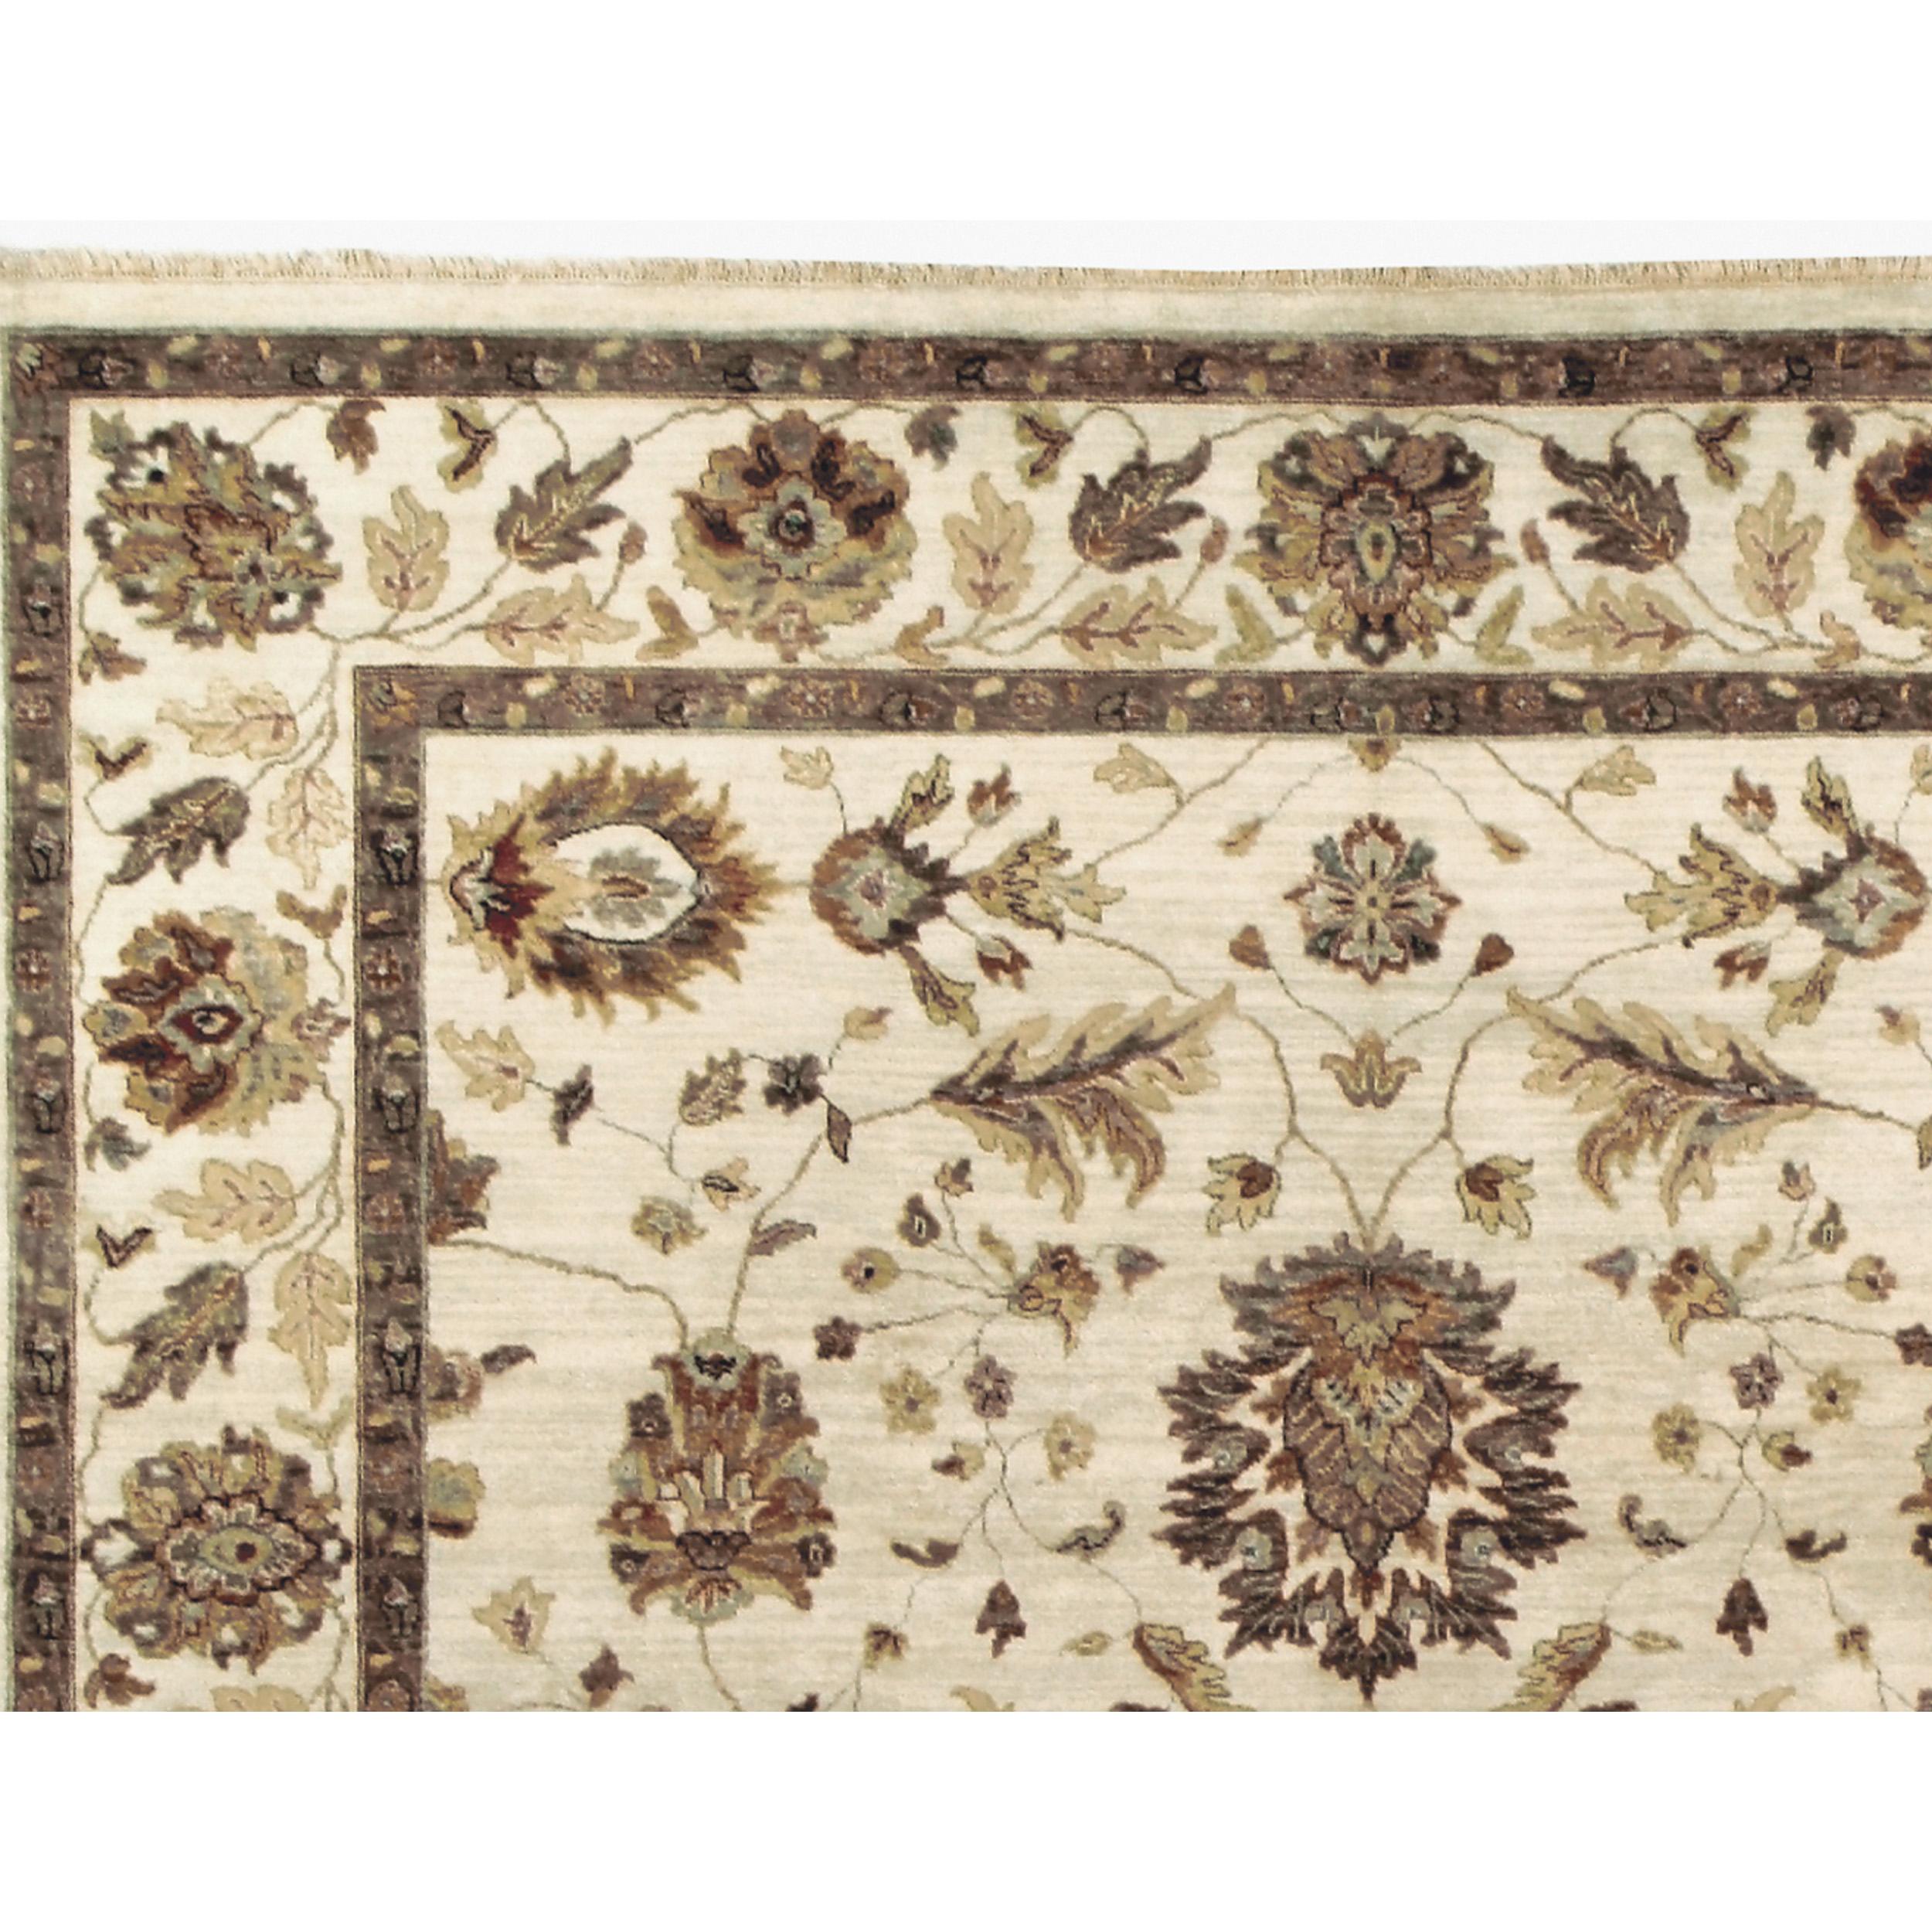 Méticuleusement confectionné, ce tapis fait appel aux techniques de tissage traditionnelles les plus complexes de l'Inde, guidées par l'expertise d'artisans qualifiés. Chaque tapis est un travail d'amour, les tisseurs à la main consacrant